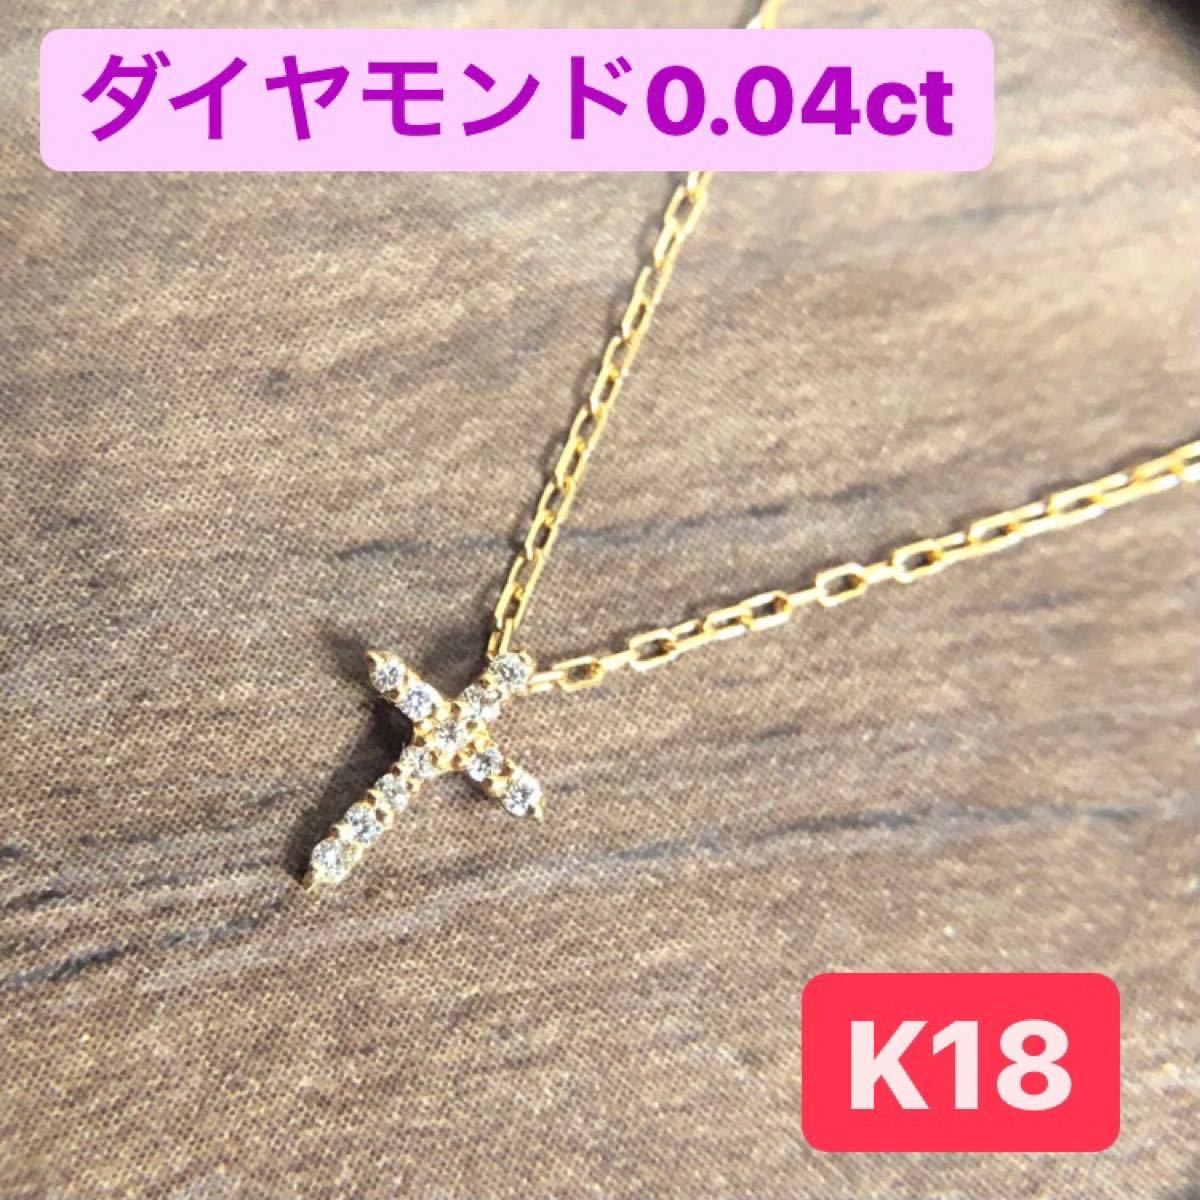 ダイヤモンド0.04ct k18/イエローゴールド ネックレス クロス ...